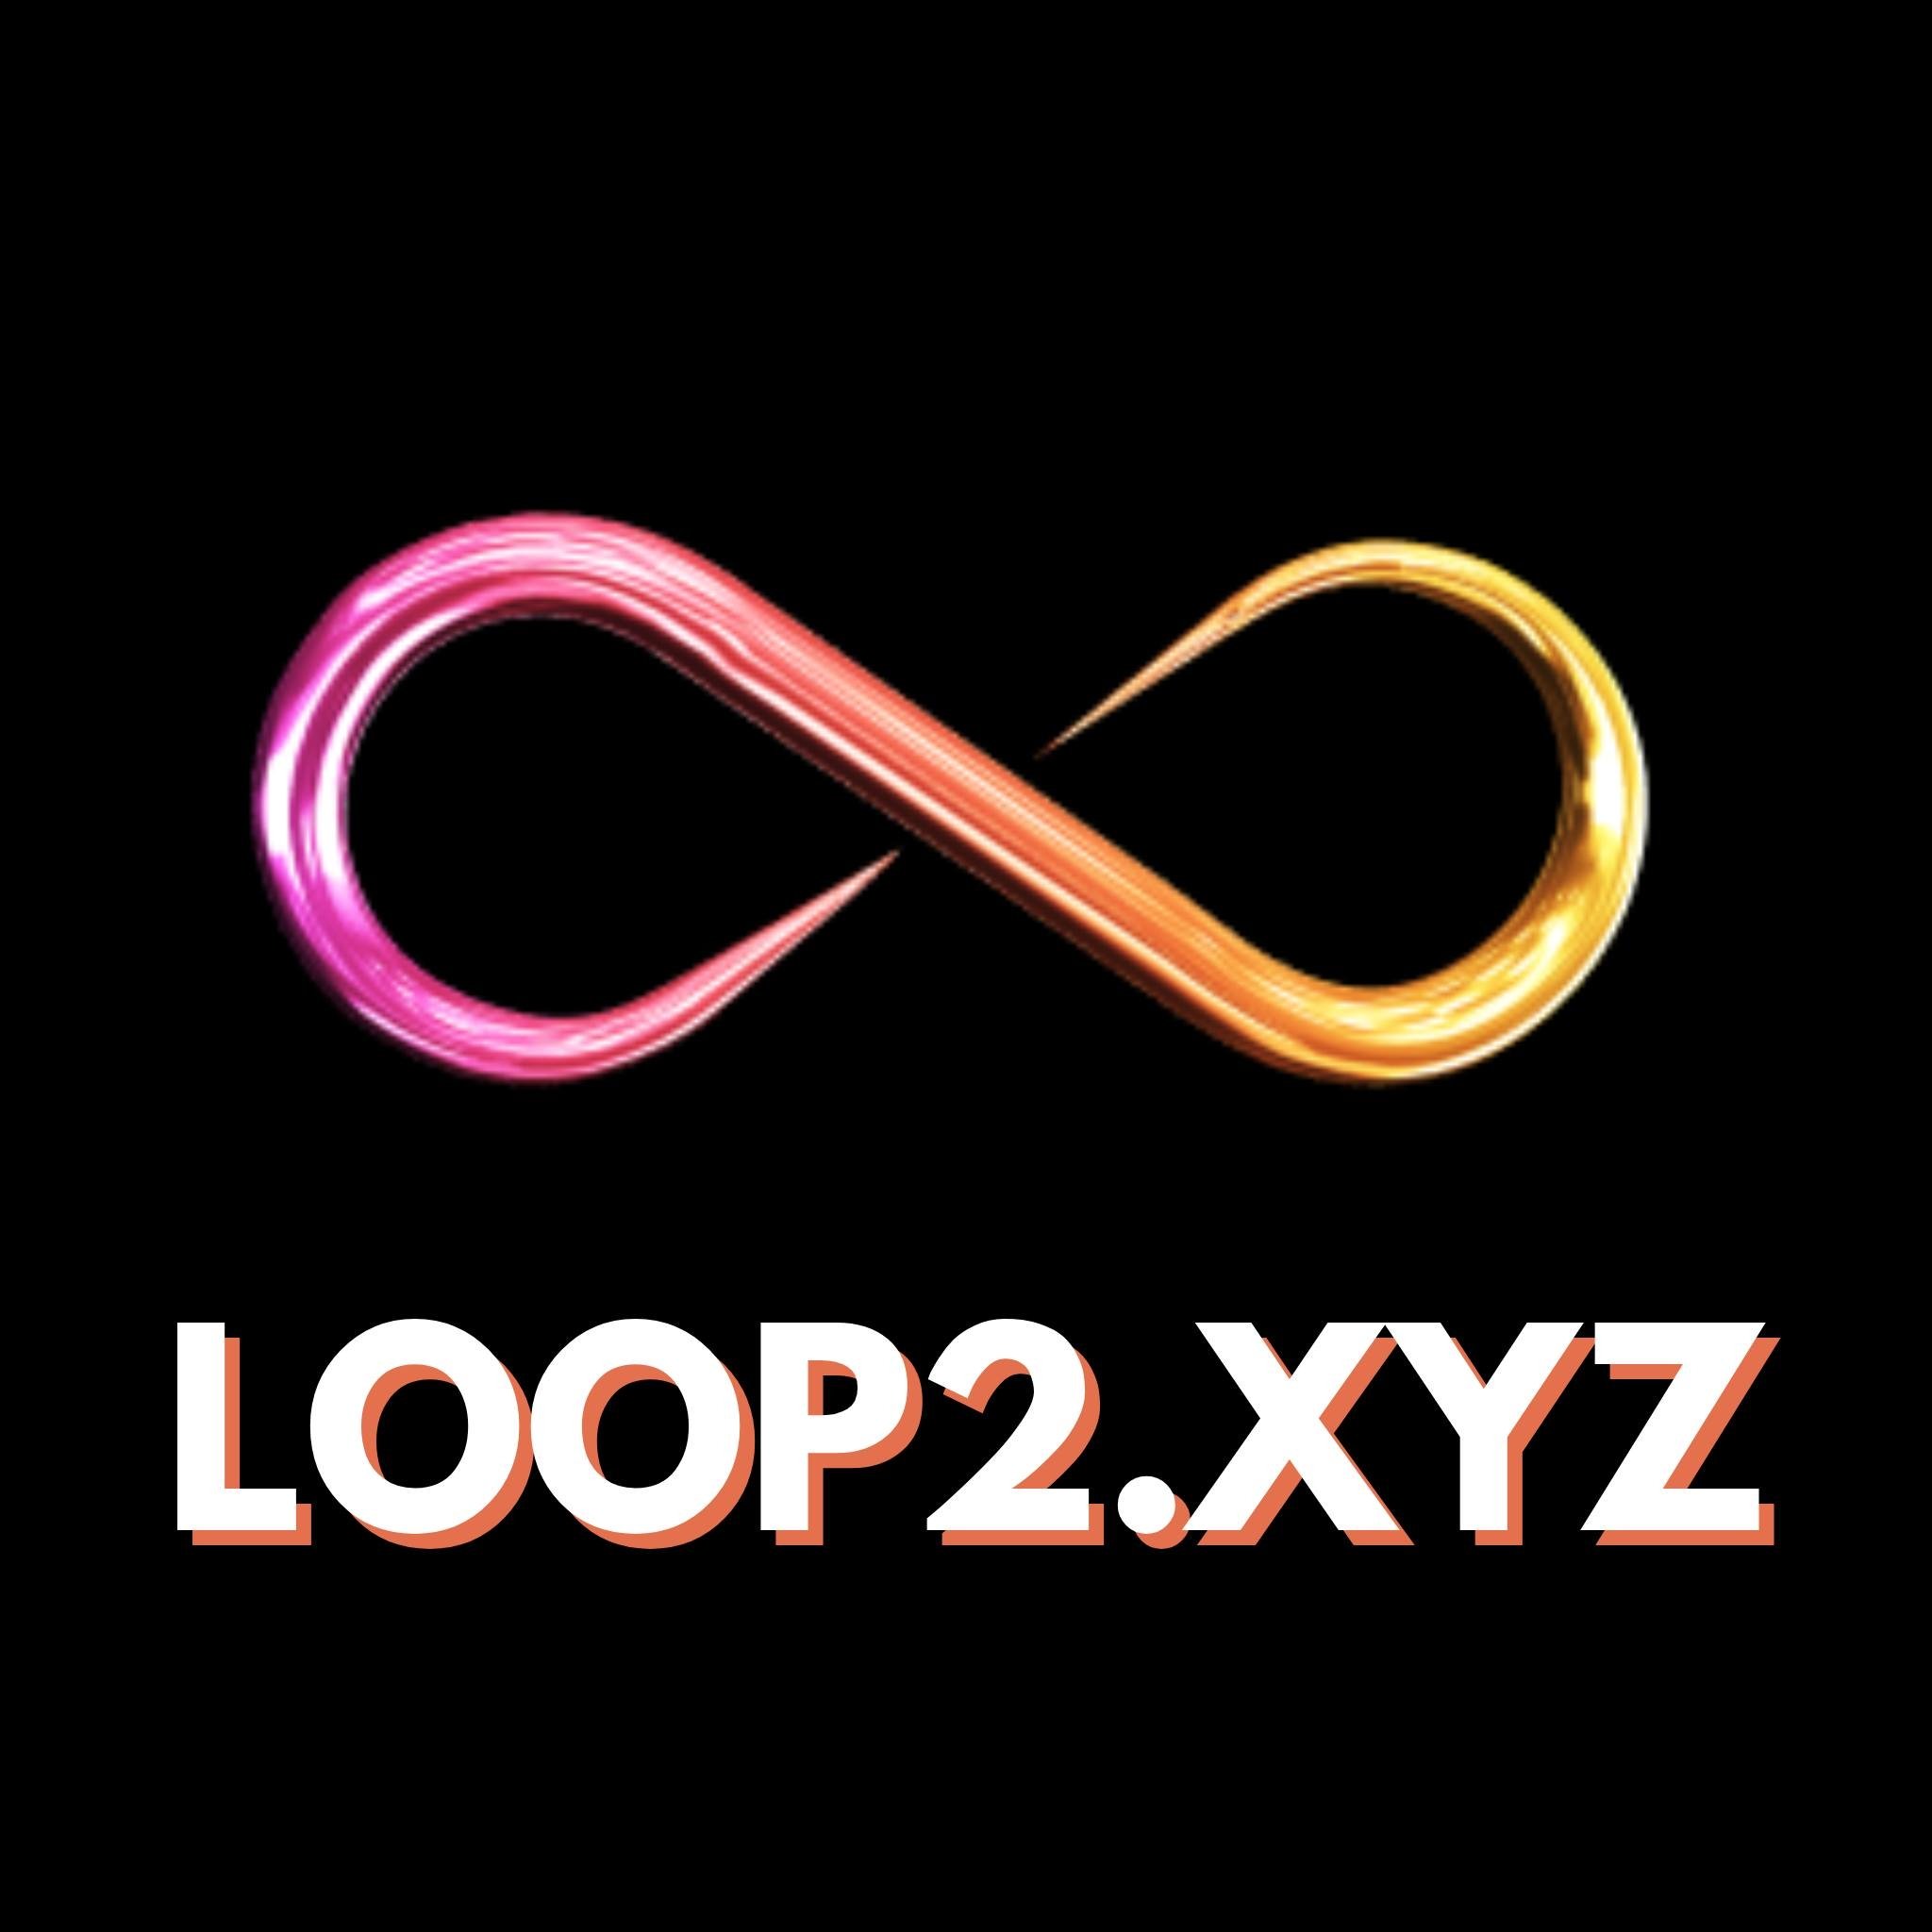 Loop2 loop logo